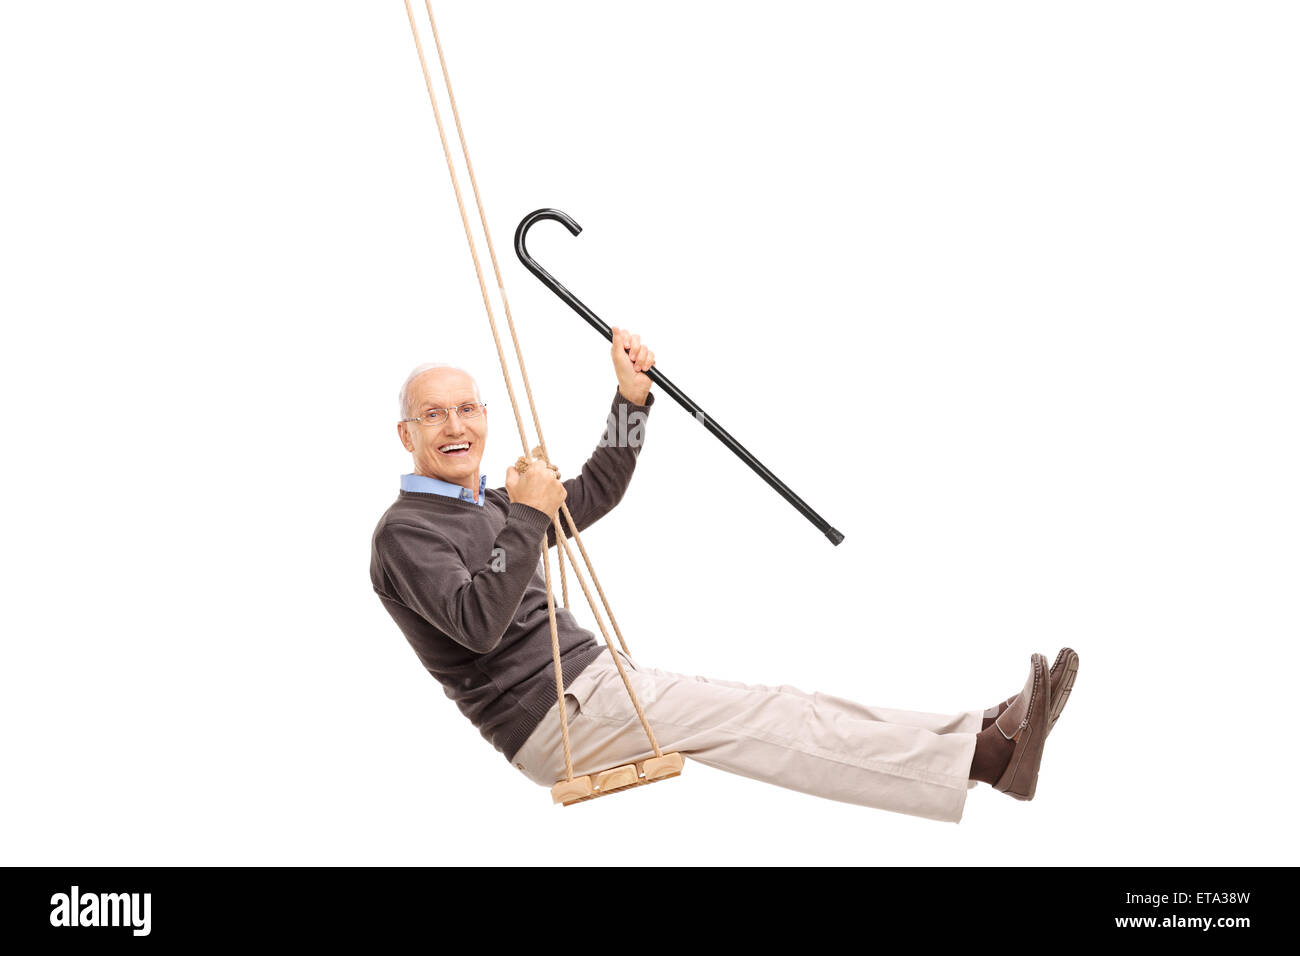 Studio shot of a joyful senior swinging on a swing and holding a cane isolated on white background Stock Photo